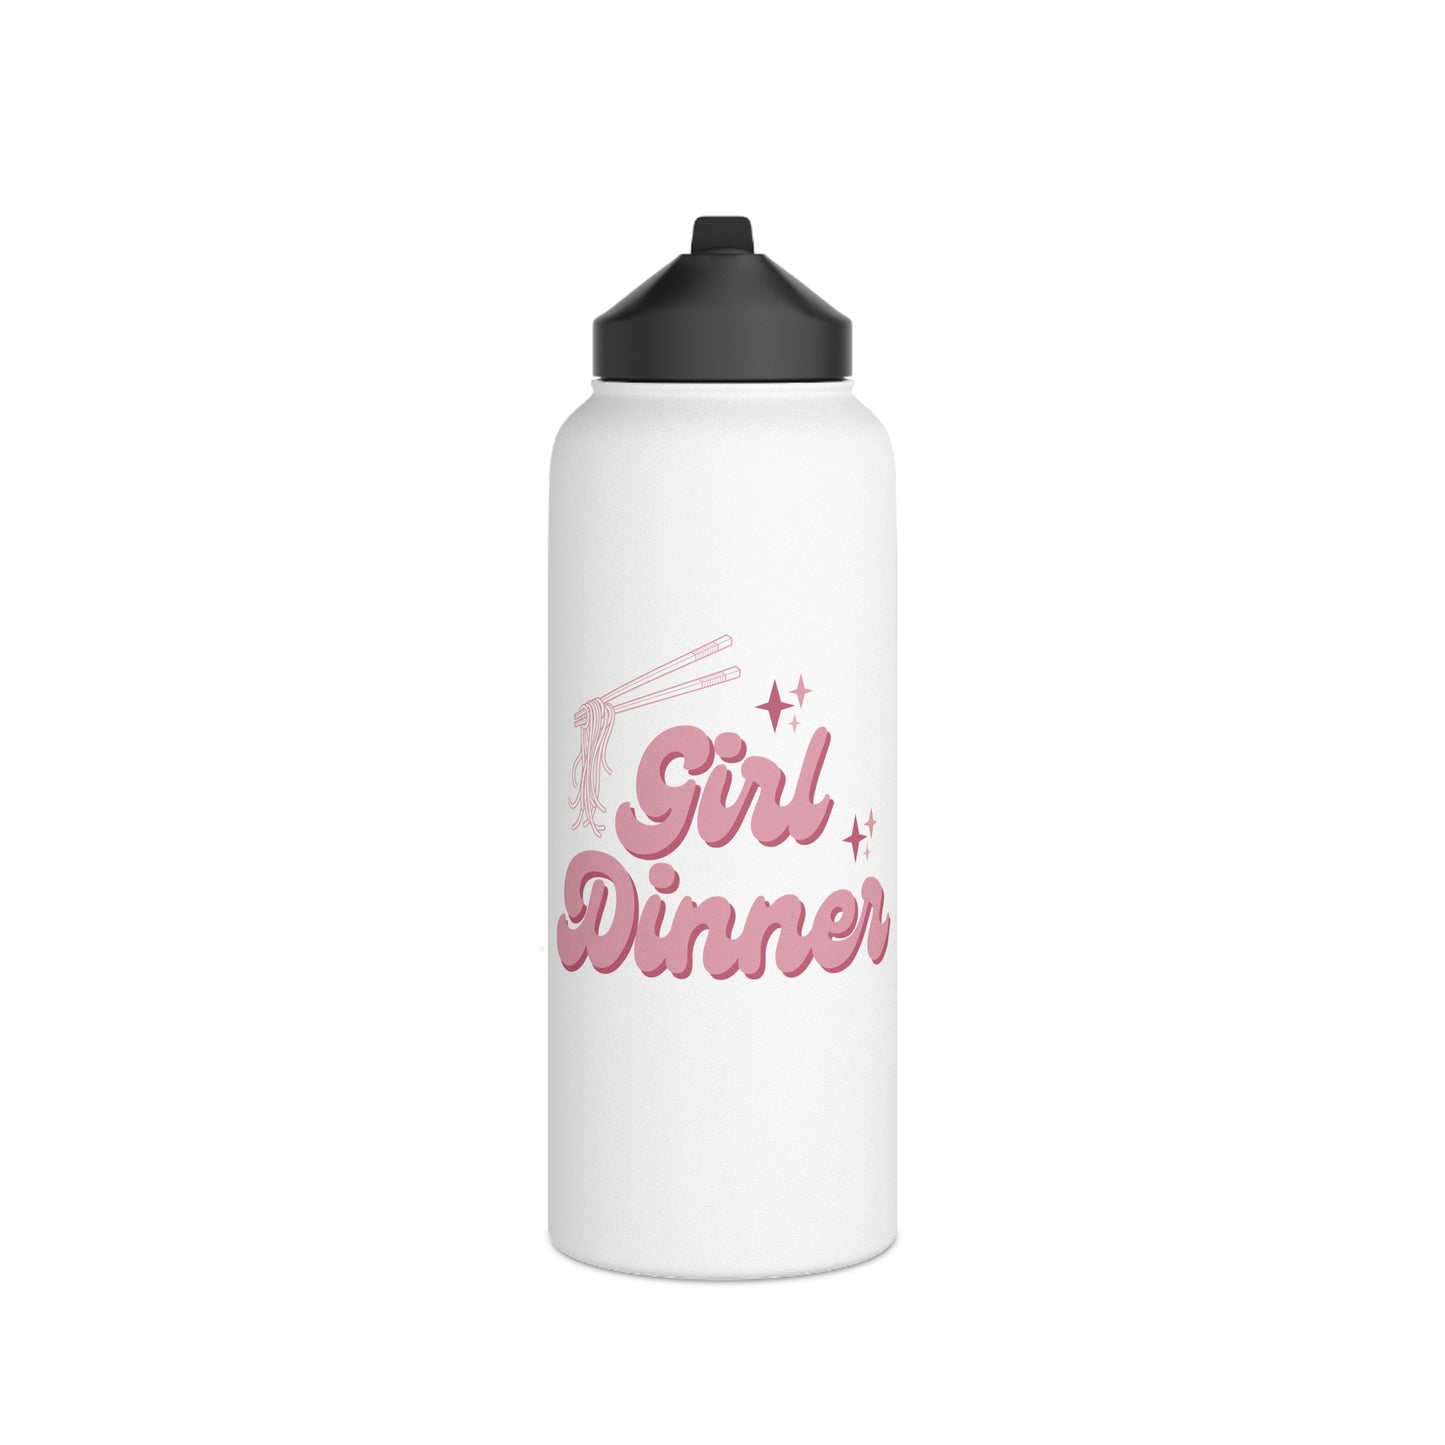 Girl Dinner - Stainless Steel Water Bottle